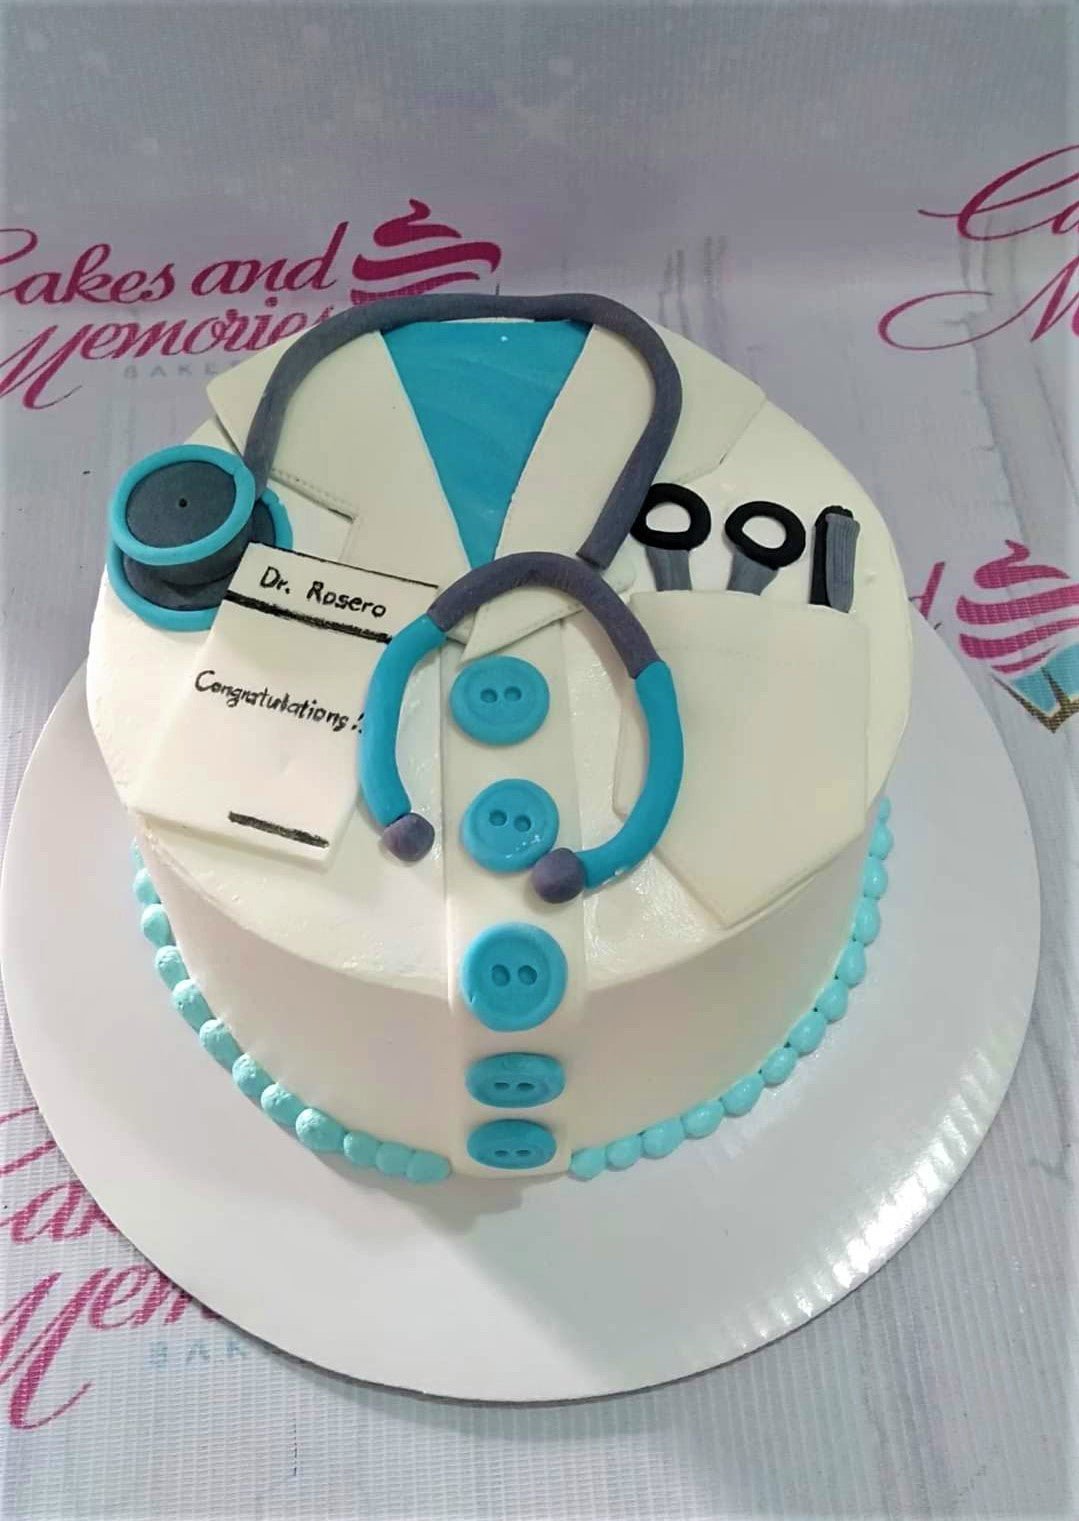 The Sensational Cakes: Doctor medicine syringe band aids , stethoscope  design sugar handcrafted 3d customized birthday theme cake #singaporecake  #3dcake #doctorcake #medicinecake #stethoscopecake #corpocake #adultcake